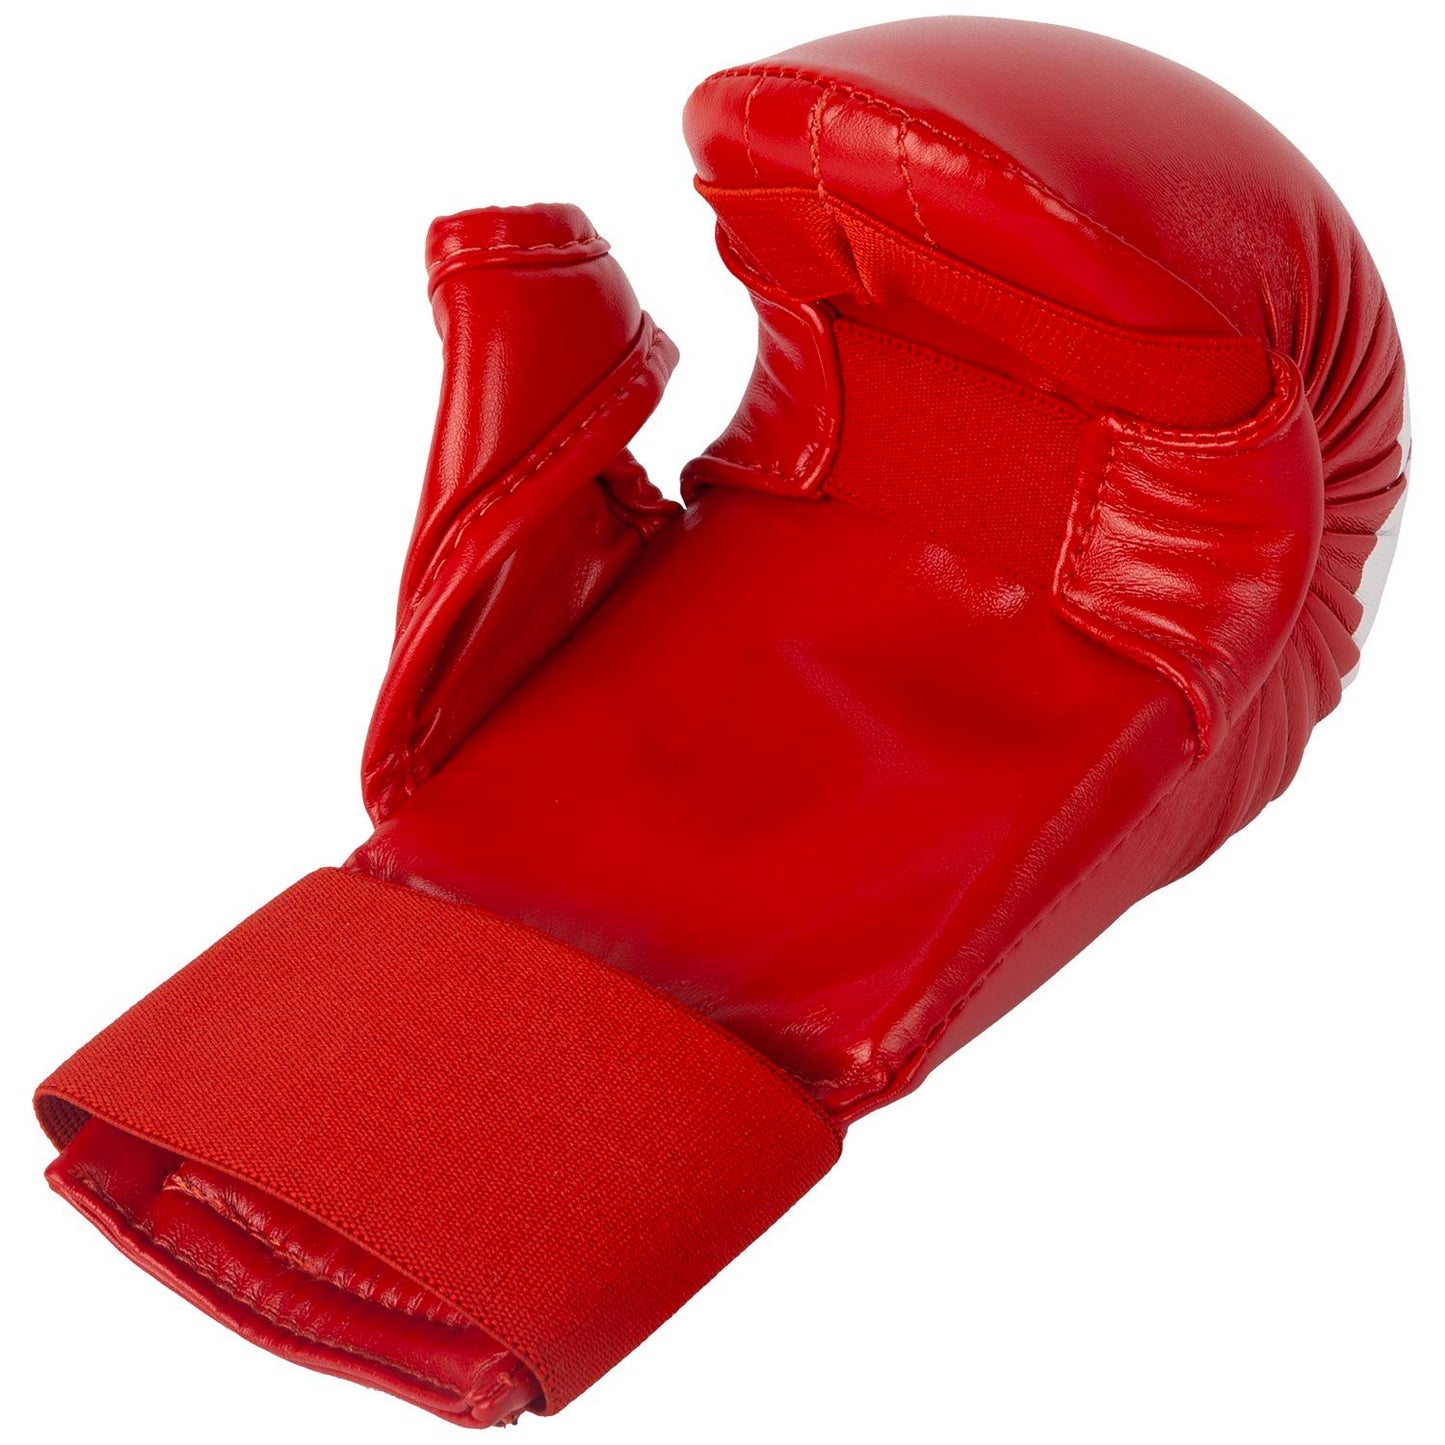 Venum Giant Karate Handschuhe - mit Daumen - Rot